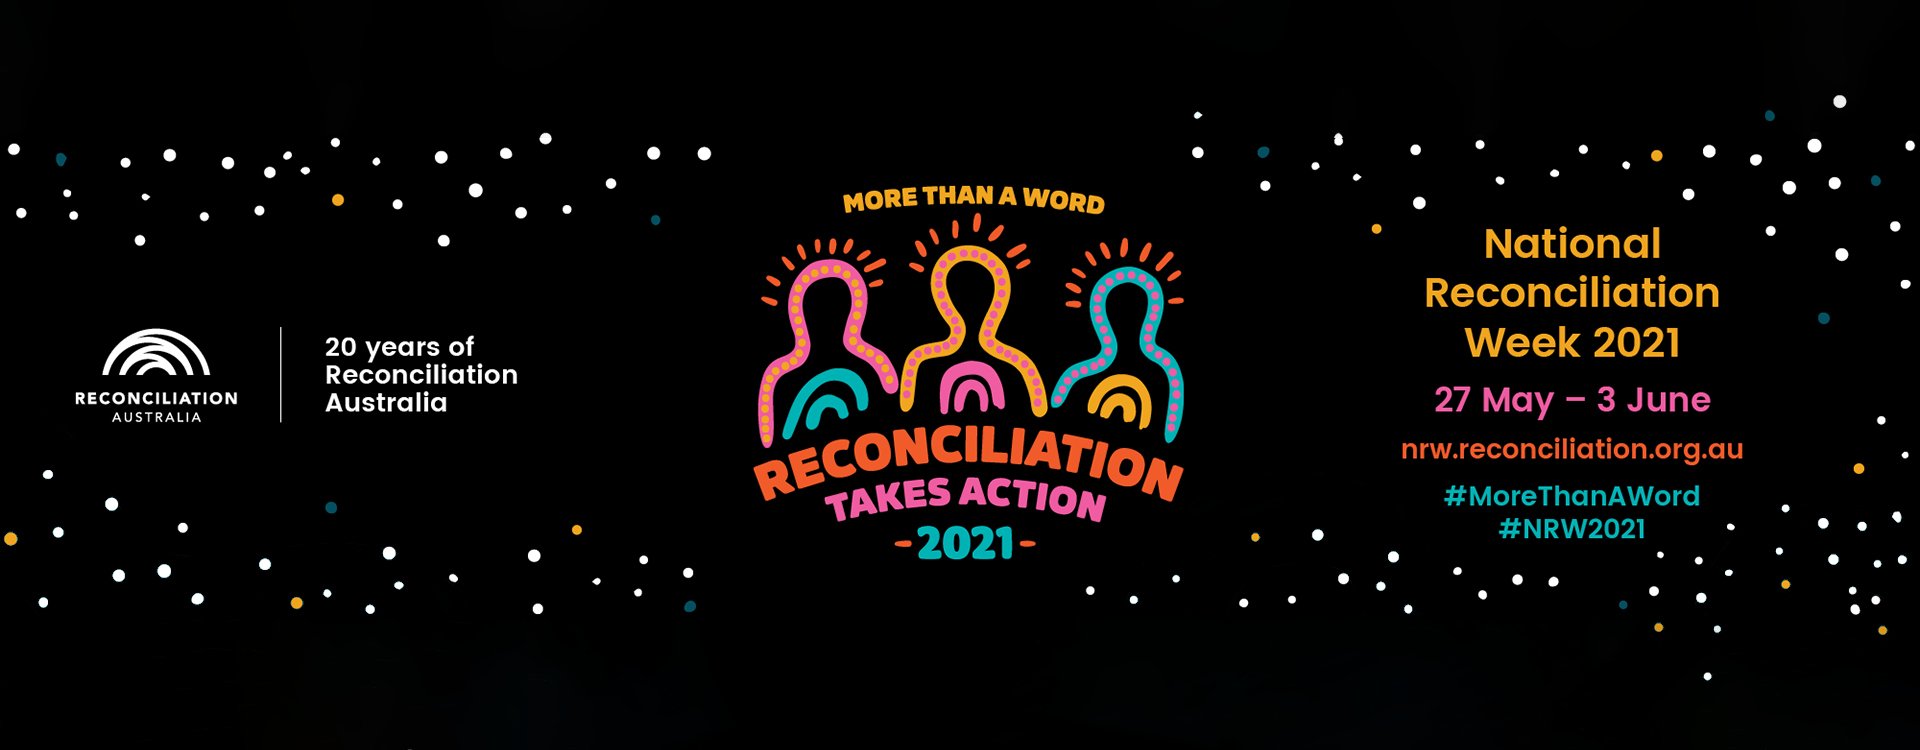 bnr-reconciliation-week-2021